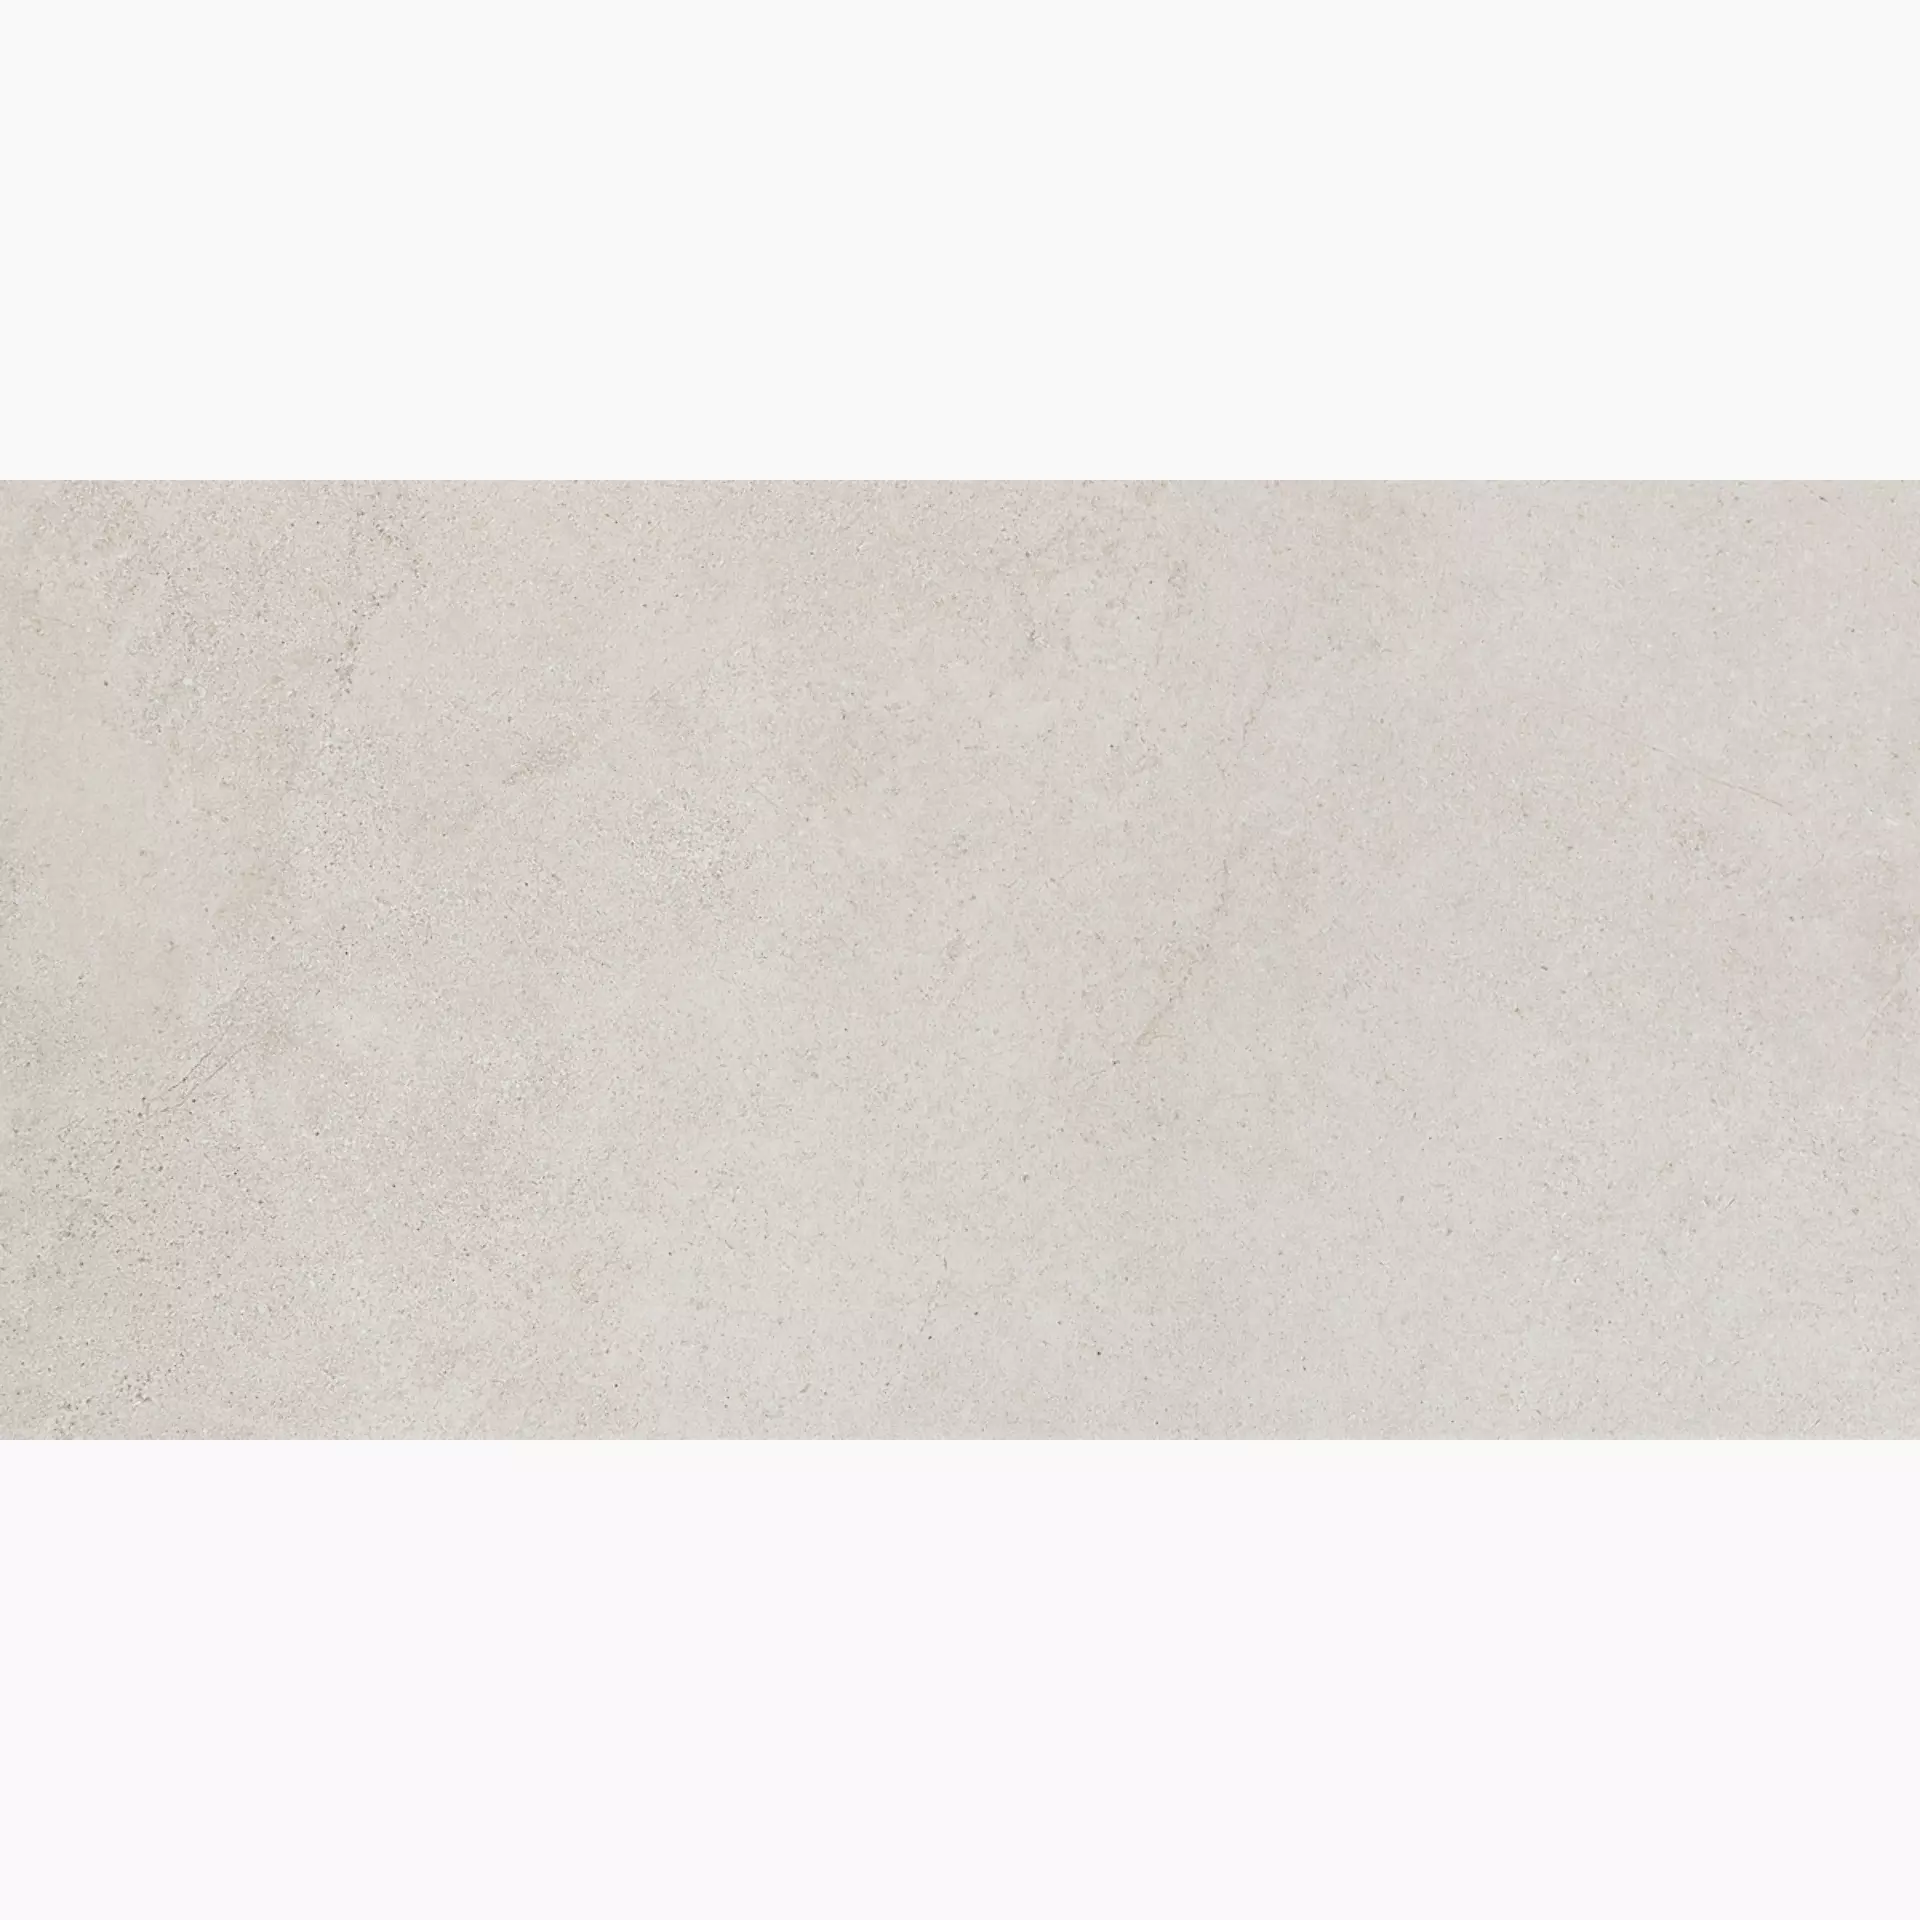 Marazzi Mystone Kashmir Bianco Naturale – Matt MLR0 30x60cm rectified 10mm